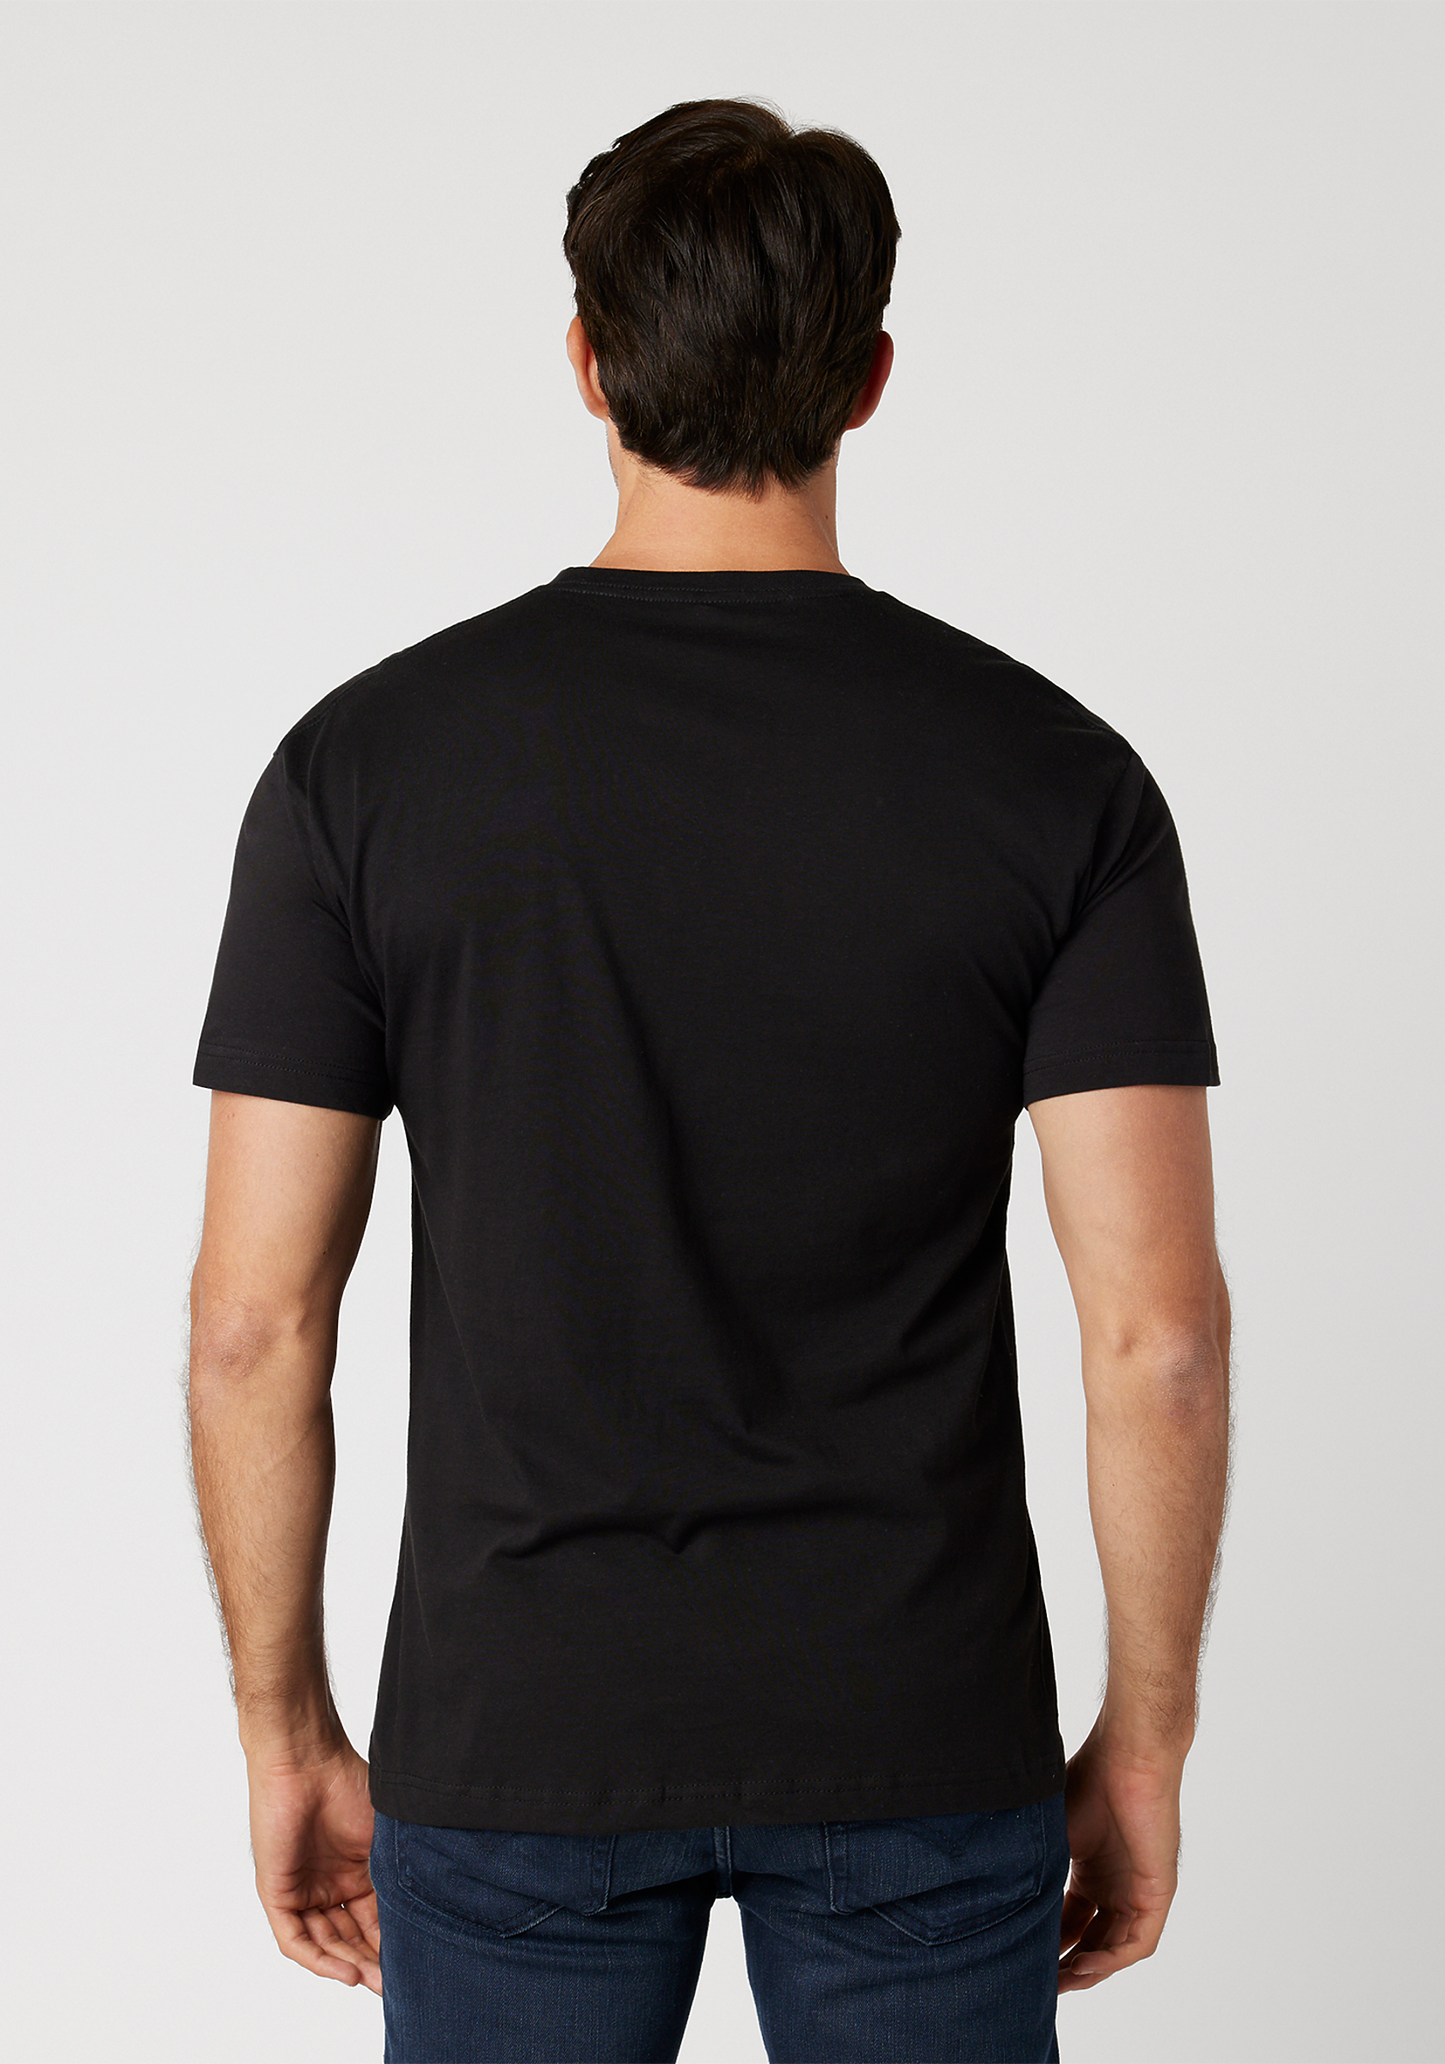 The Snore Face Unisex T-Shirt (Black)